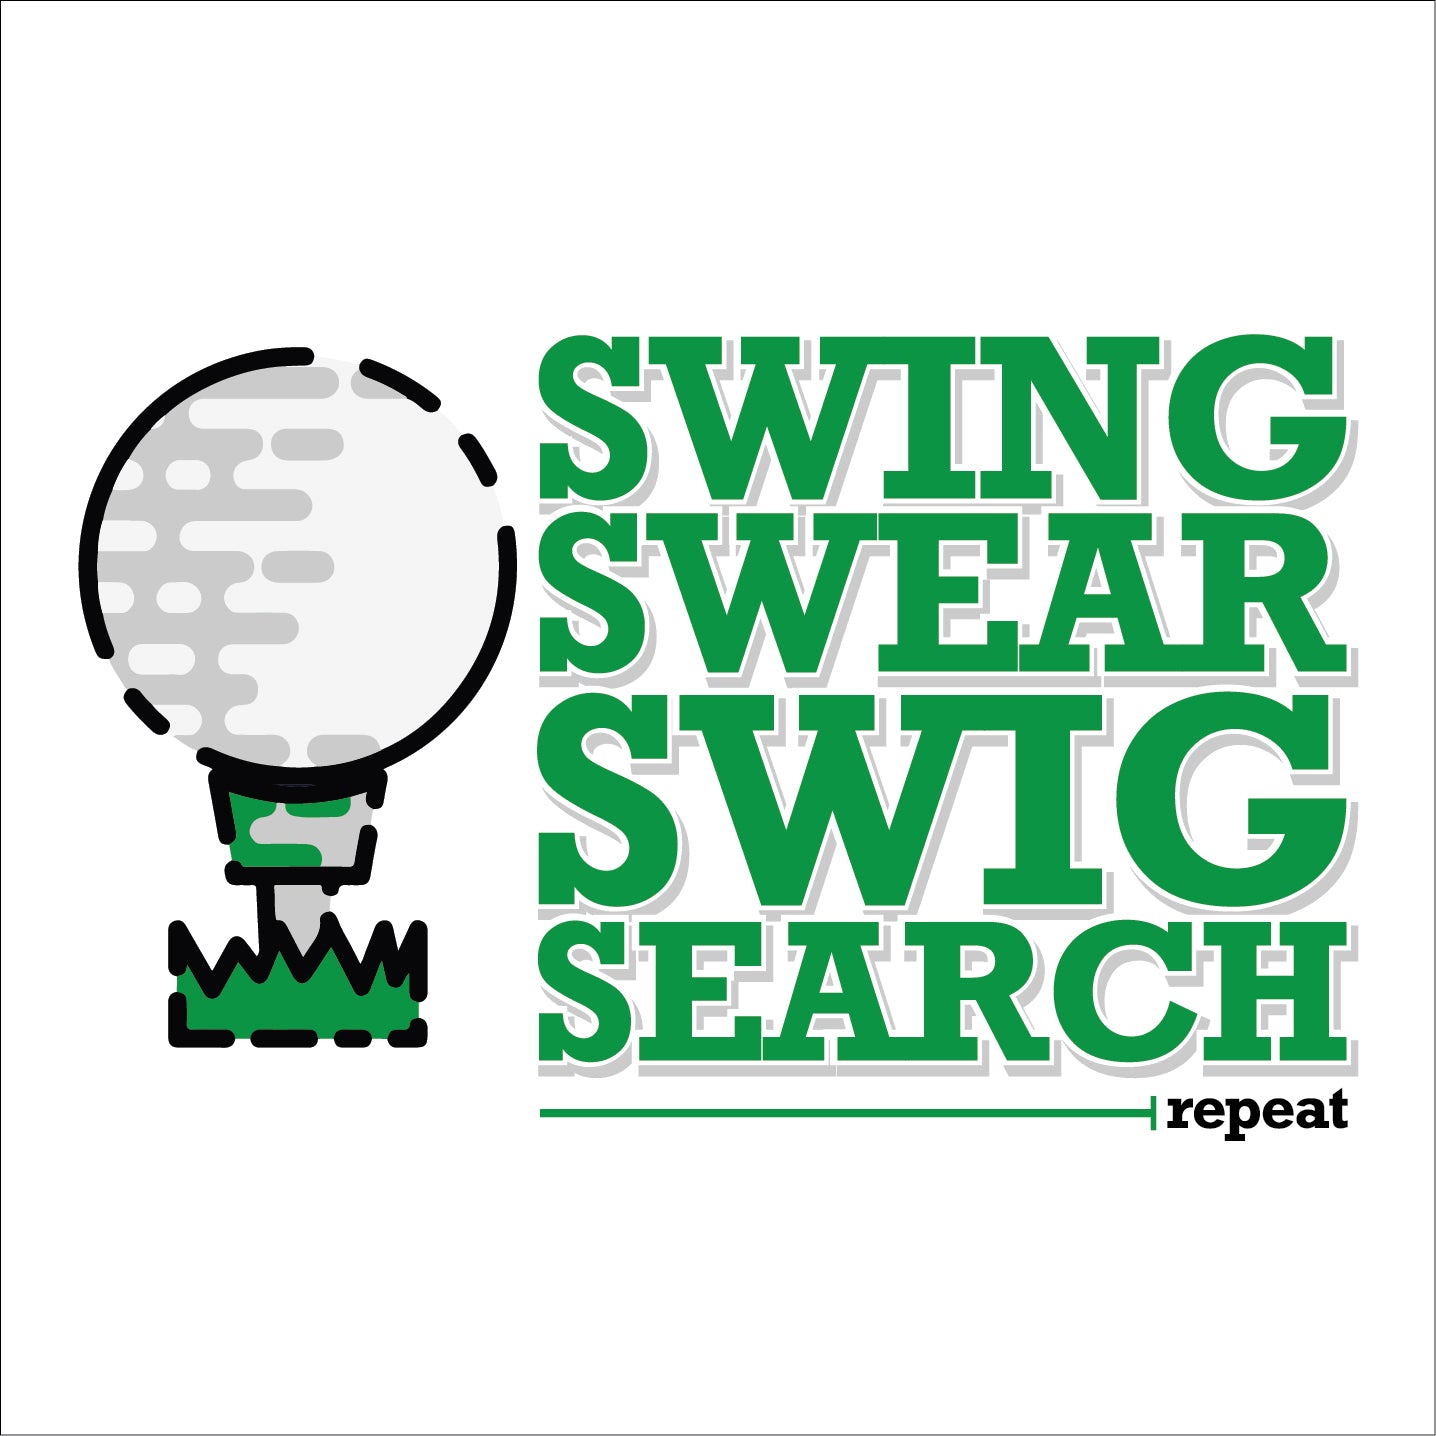 SWING SWEAR SWIG SEARCH repeat